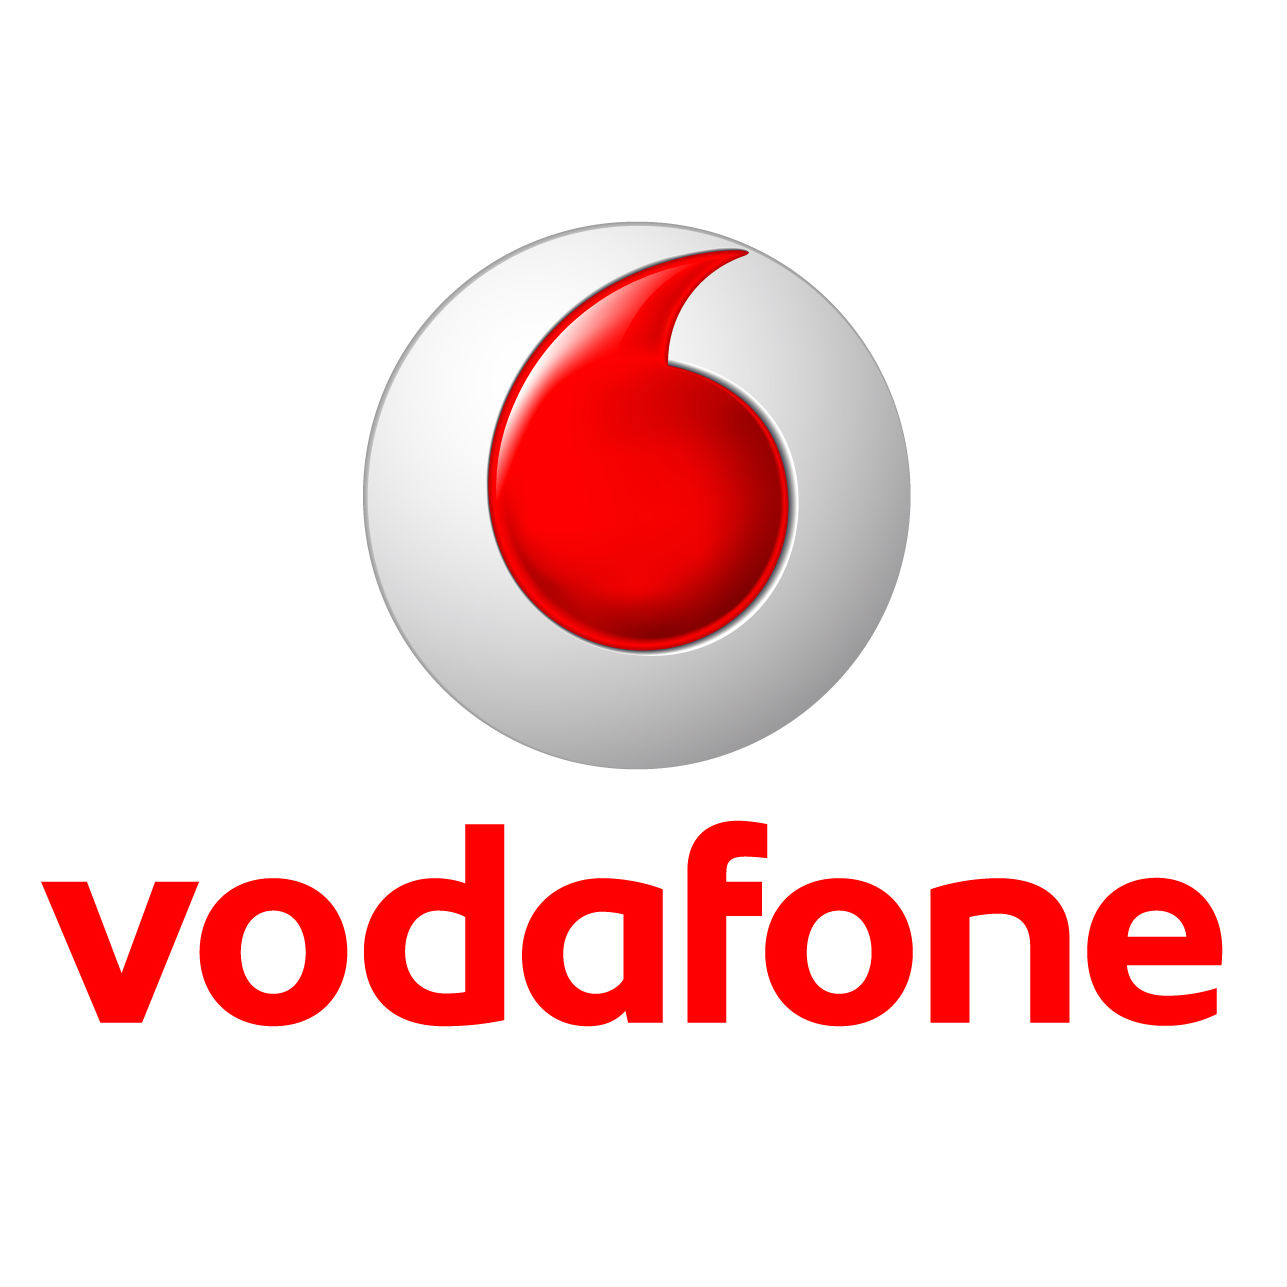 Vodaphone-logo.jpg